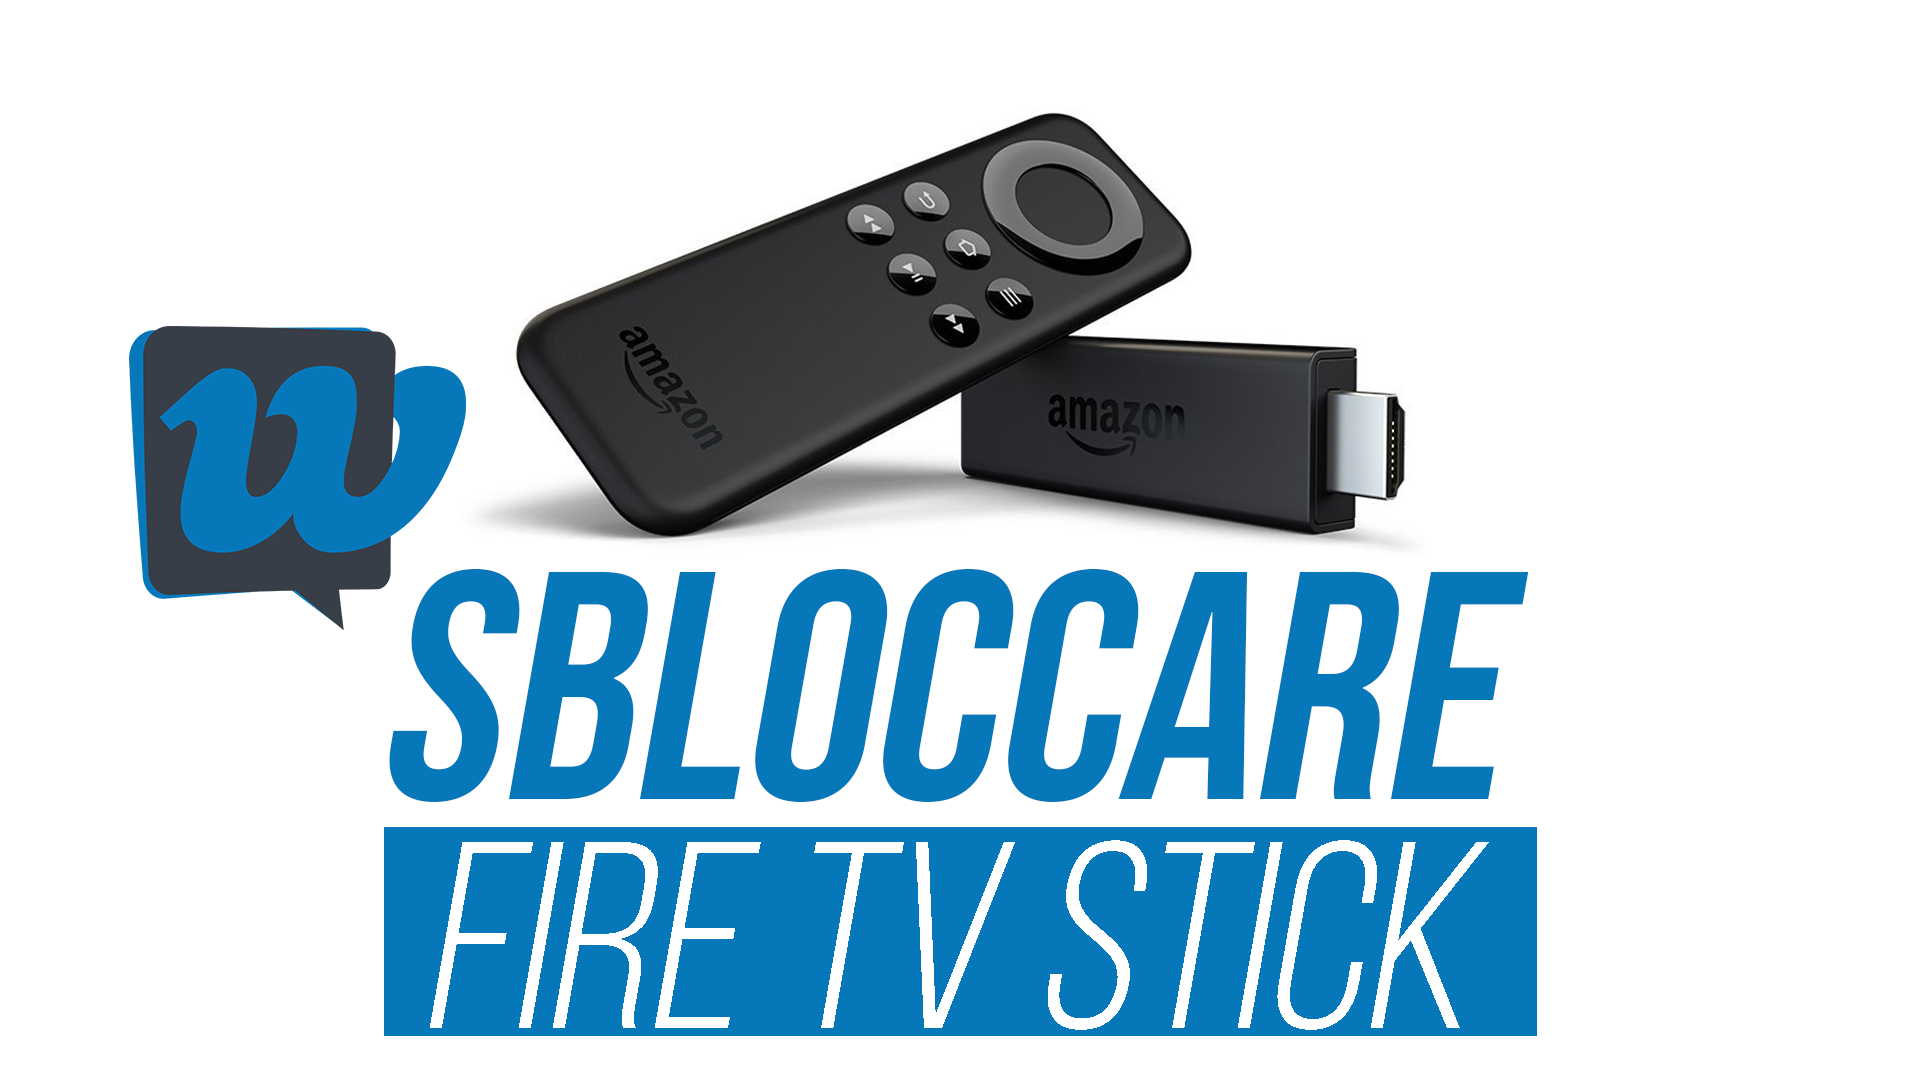 sbloccare-fire-stick